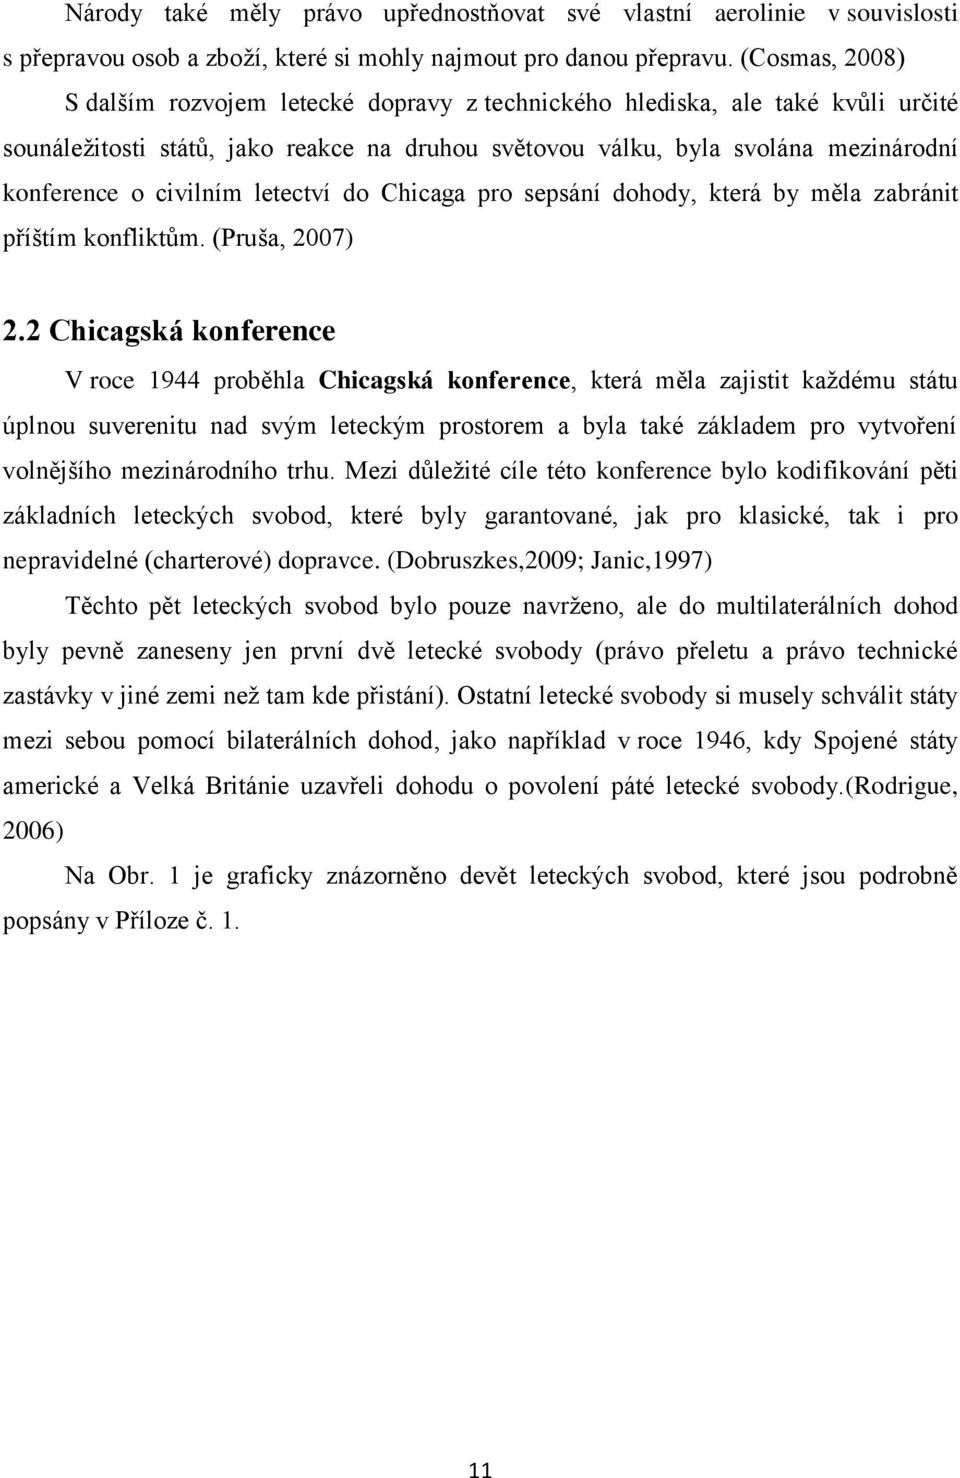 civilním letectví do Chicaga pro sepsání dohody, která by měla zabránit příštím konfliktům. (Pruša, 2007) 2.